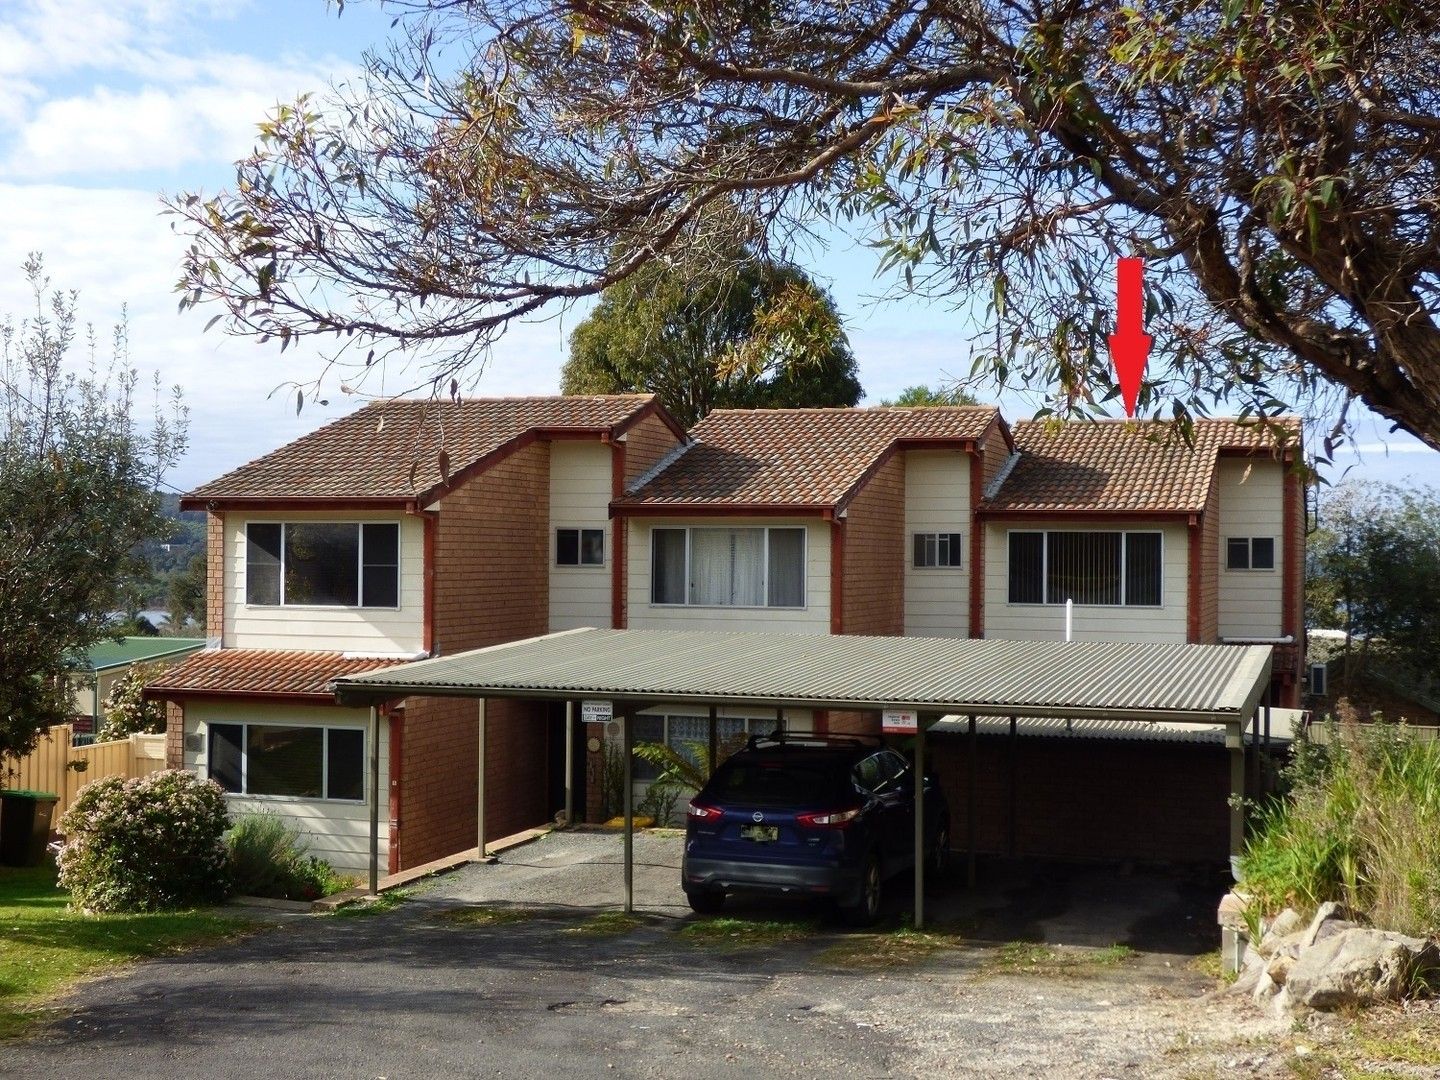 2 bedrooms Apartment / Unit / Flat in Unit 3/26 West St EDEN NSW, 2551